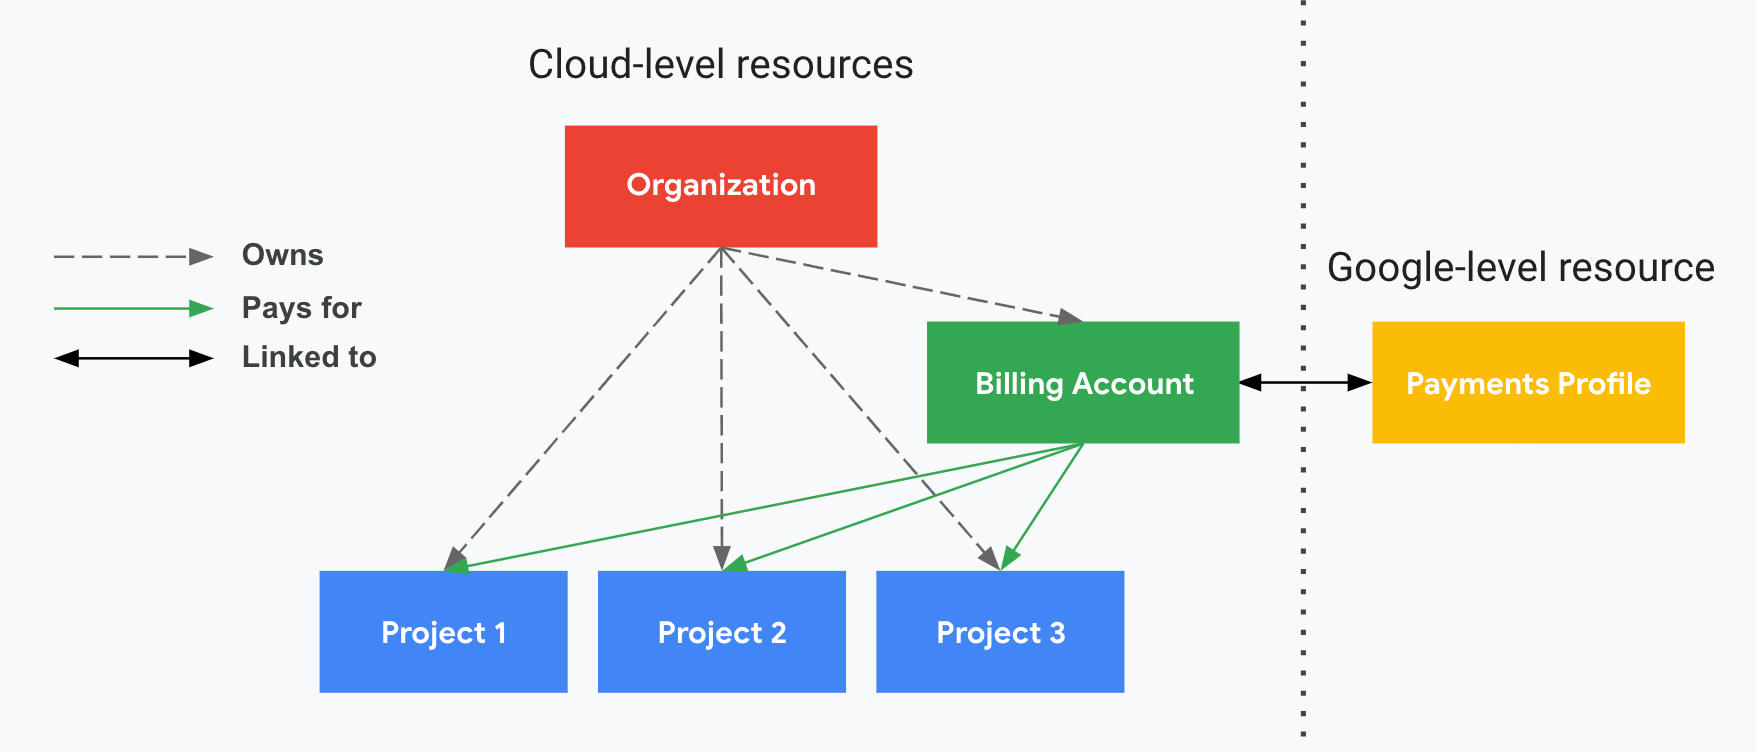 プロジェクトが Cloud Billing とお支払いプロファイルとどのように関連しているかを示します。片方にはクラウドレベルのリソース（Cloud 請求先アカウントと関連付けられたプロジェクト）が表示され、もう片方には縦の破線で区切られた Google レベルのリソース（お支払いプロファイル）が表示されます。プロジェクトでは、お支払いプロファイルにリンクされている Cloud 請求先アカウントに対して支払われます。